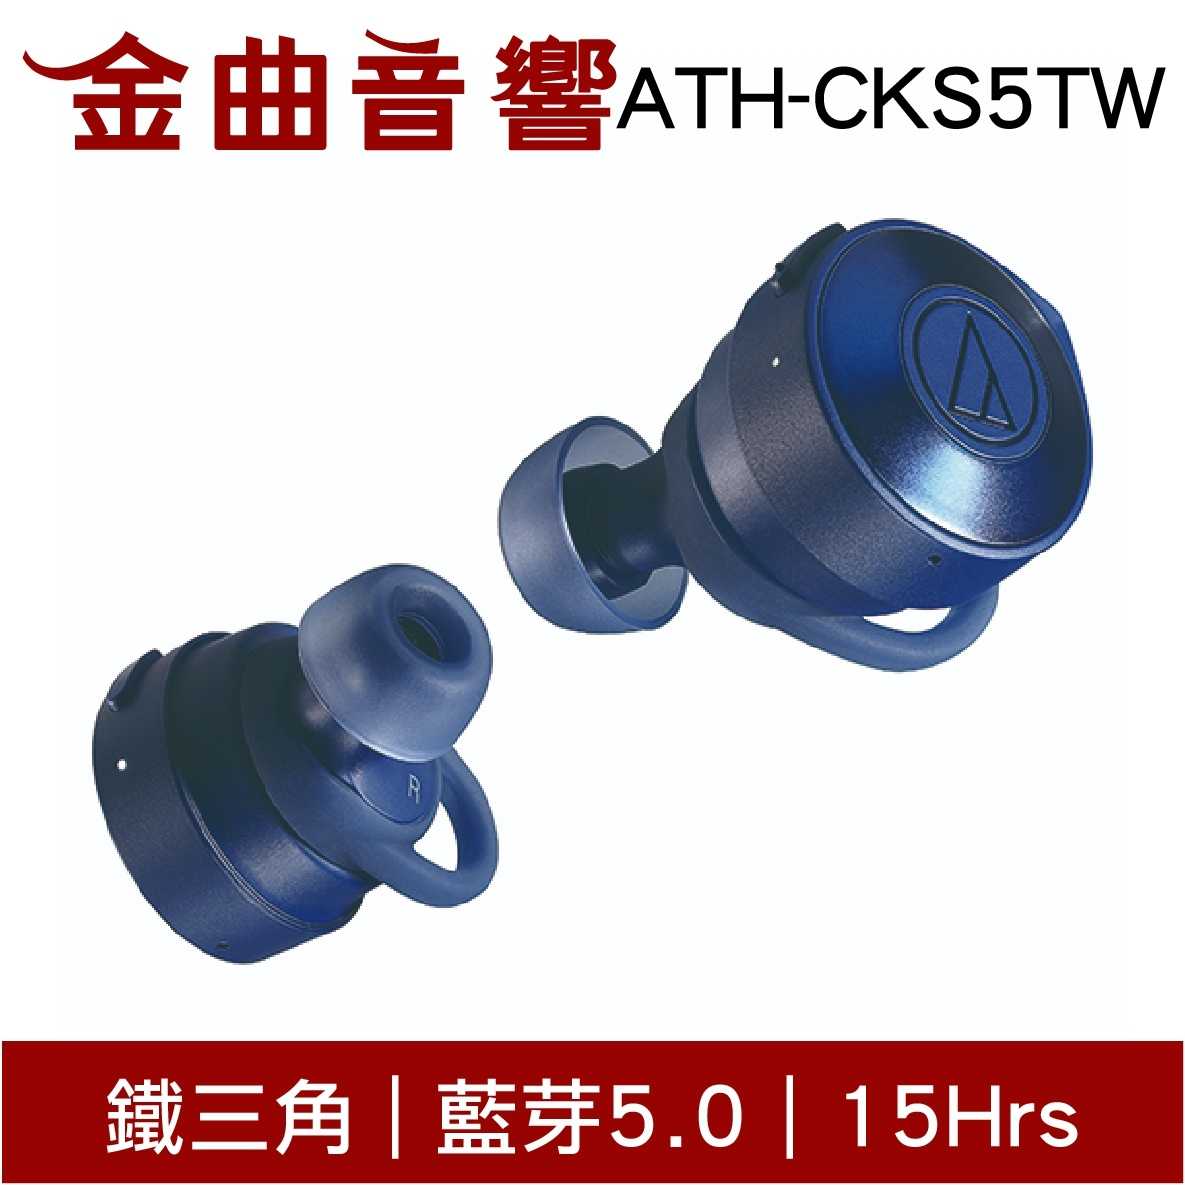 鐵三角 ATH-CKS5TW 三色可選 真無線 藍芽耳機 | 金曲音響